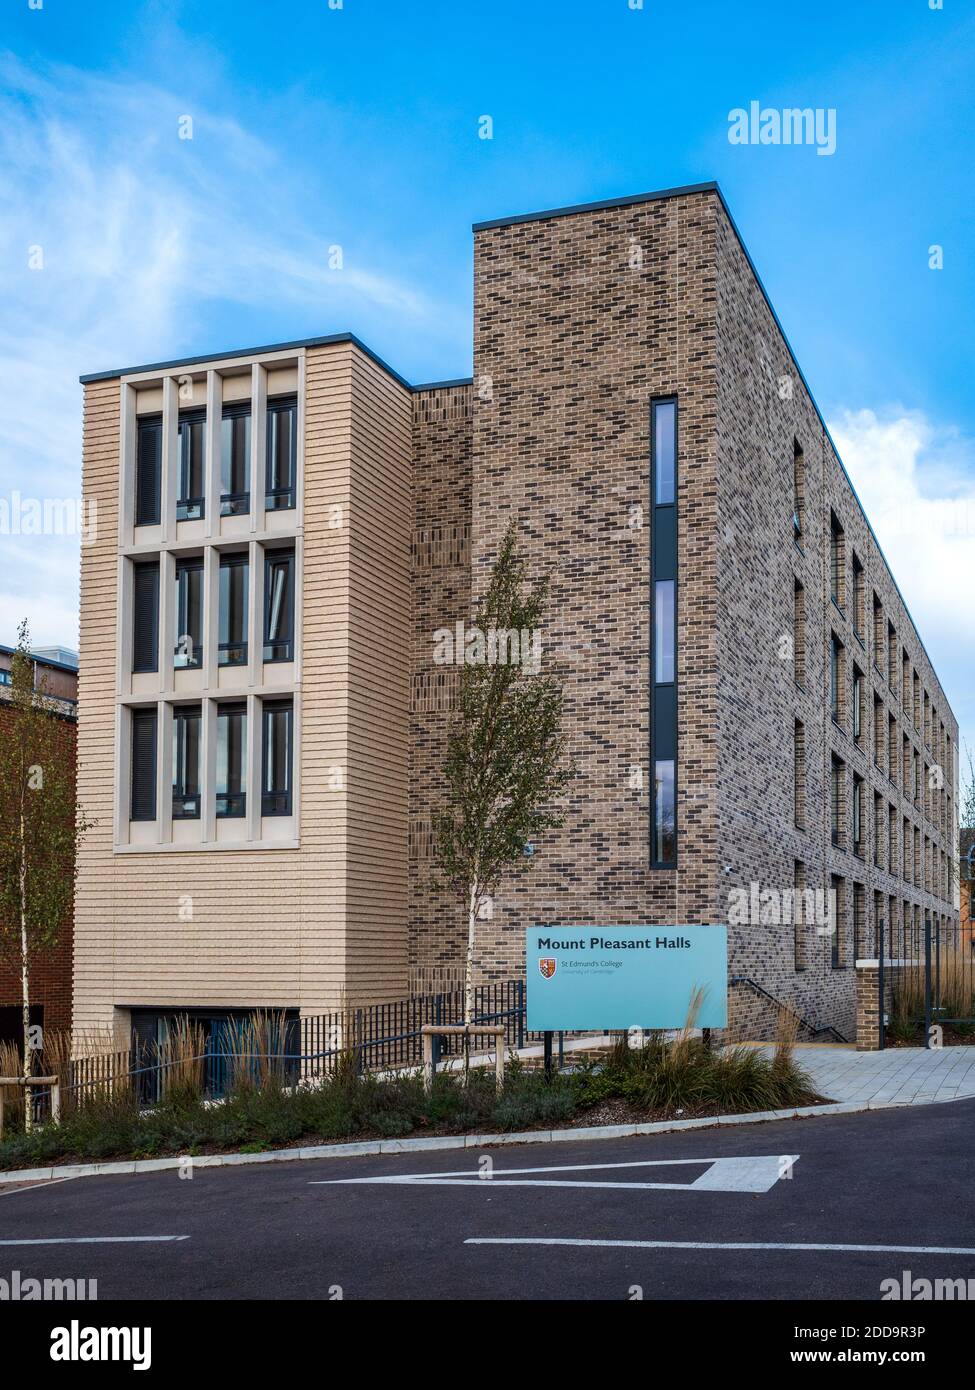 St Edmunds College Cambridge Mount Pleasant Halls, moderne Studentenwohnheime in Cambridge. Architekten R H Partnerschaft 2019. Howard Osborne LLP. Stockfoto